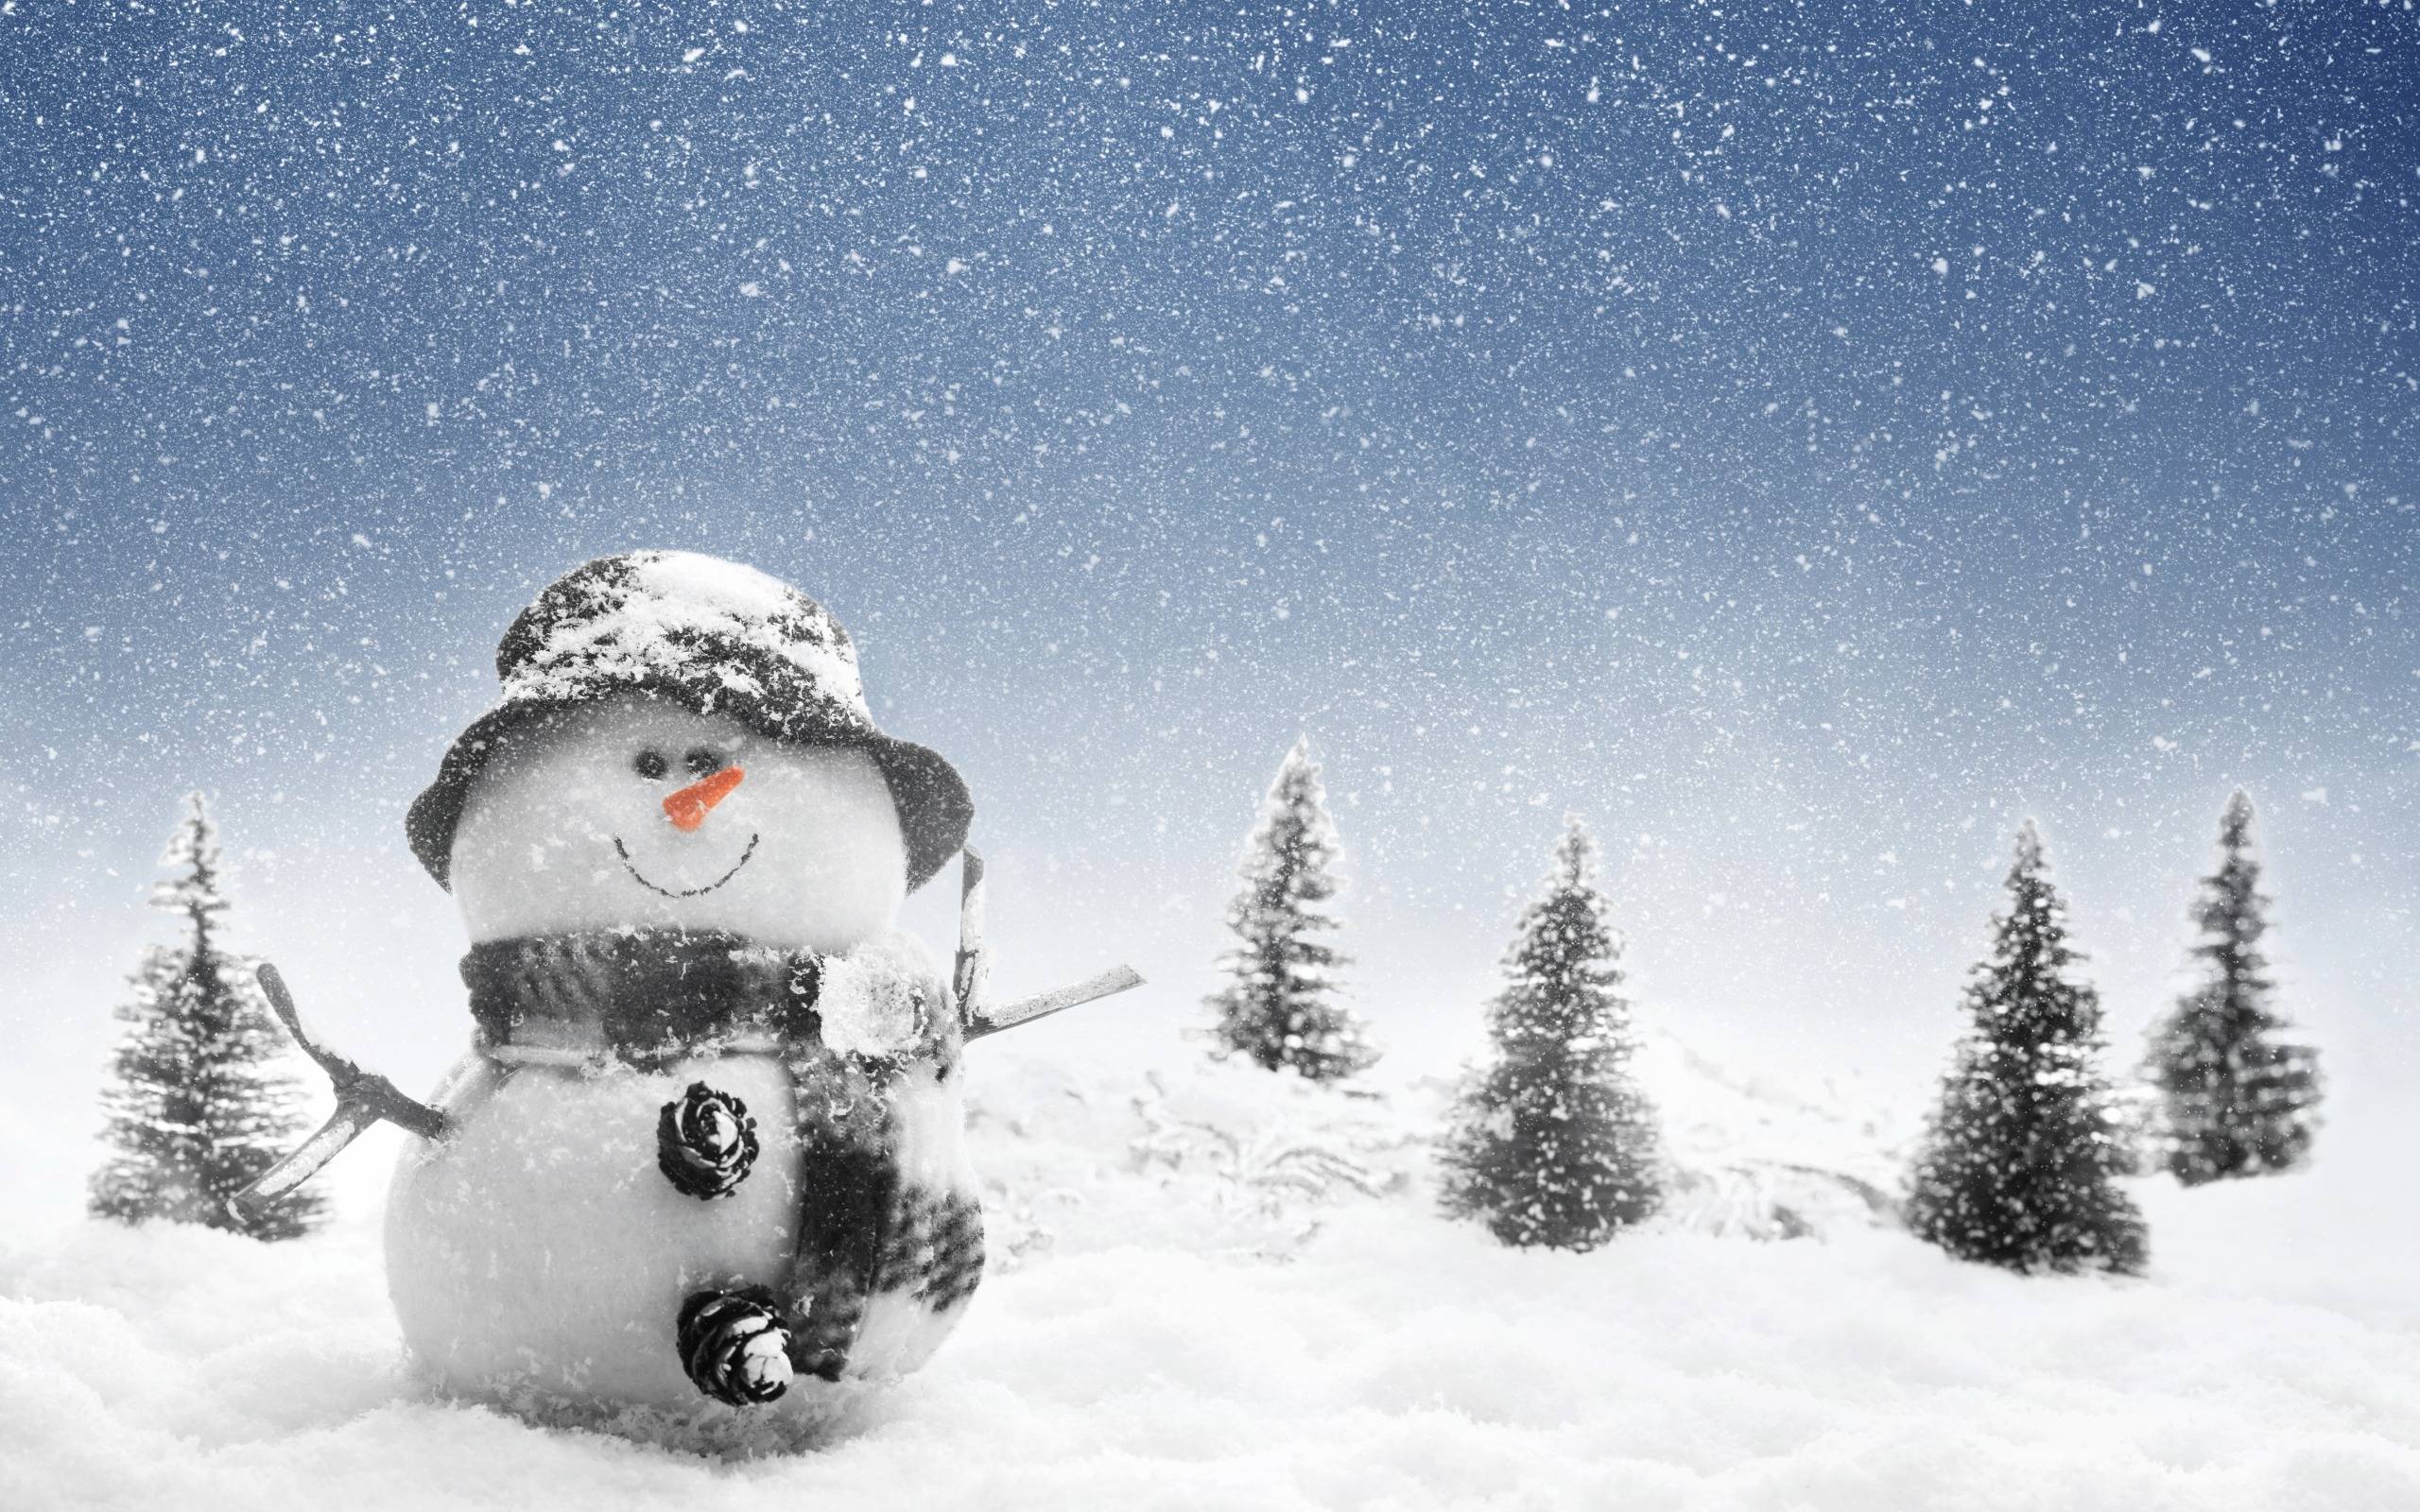 Snowman Wallpaper. Snowman Wallpaper, Christmas Snowman Wallpaper and Funny Snowman Wallpaper